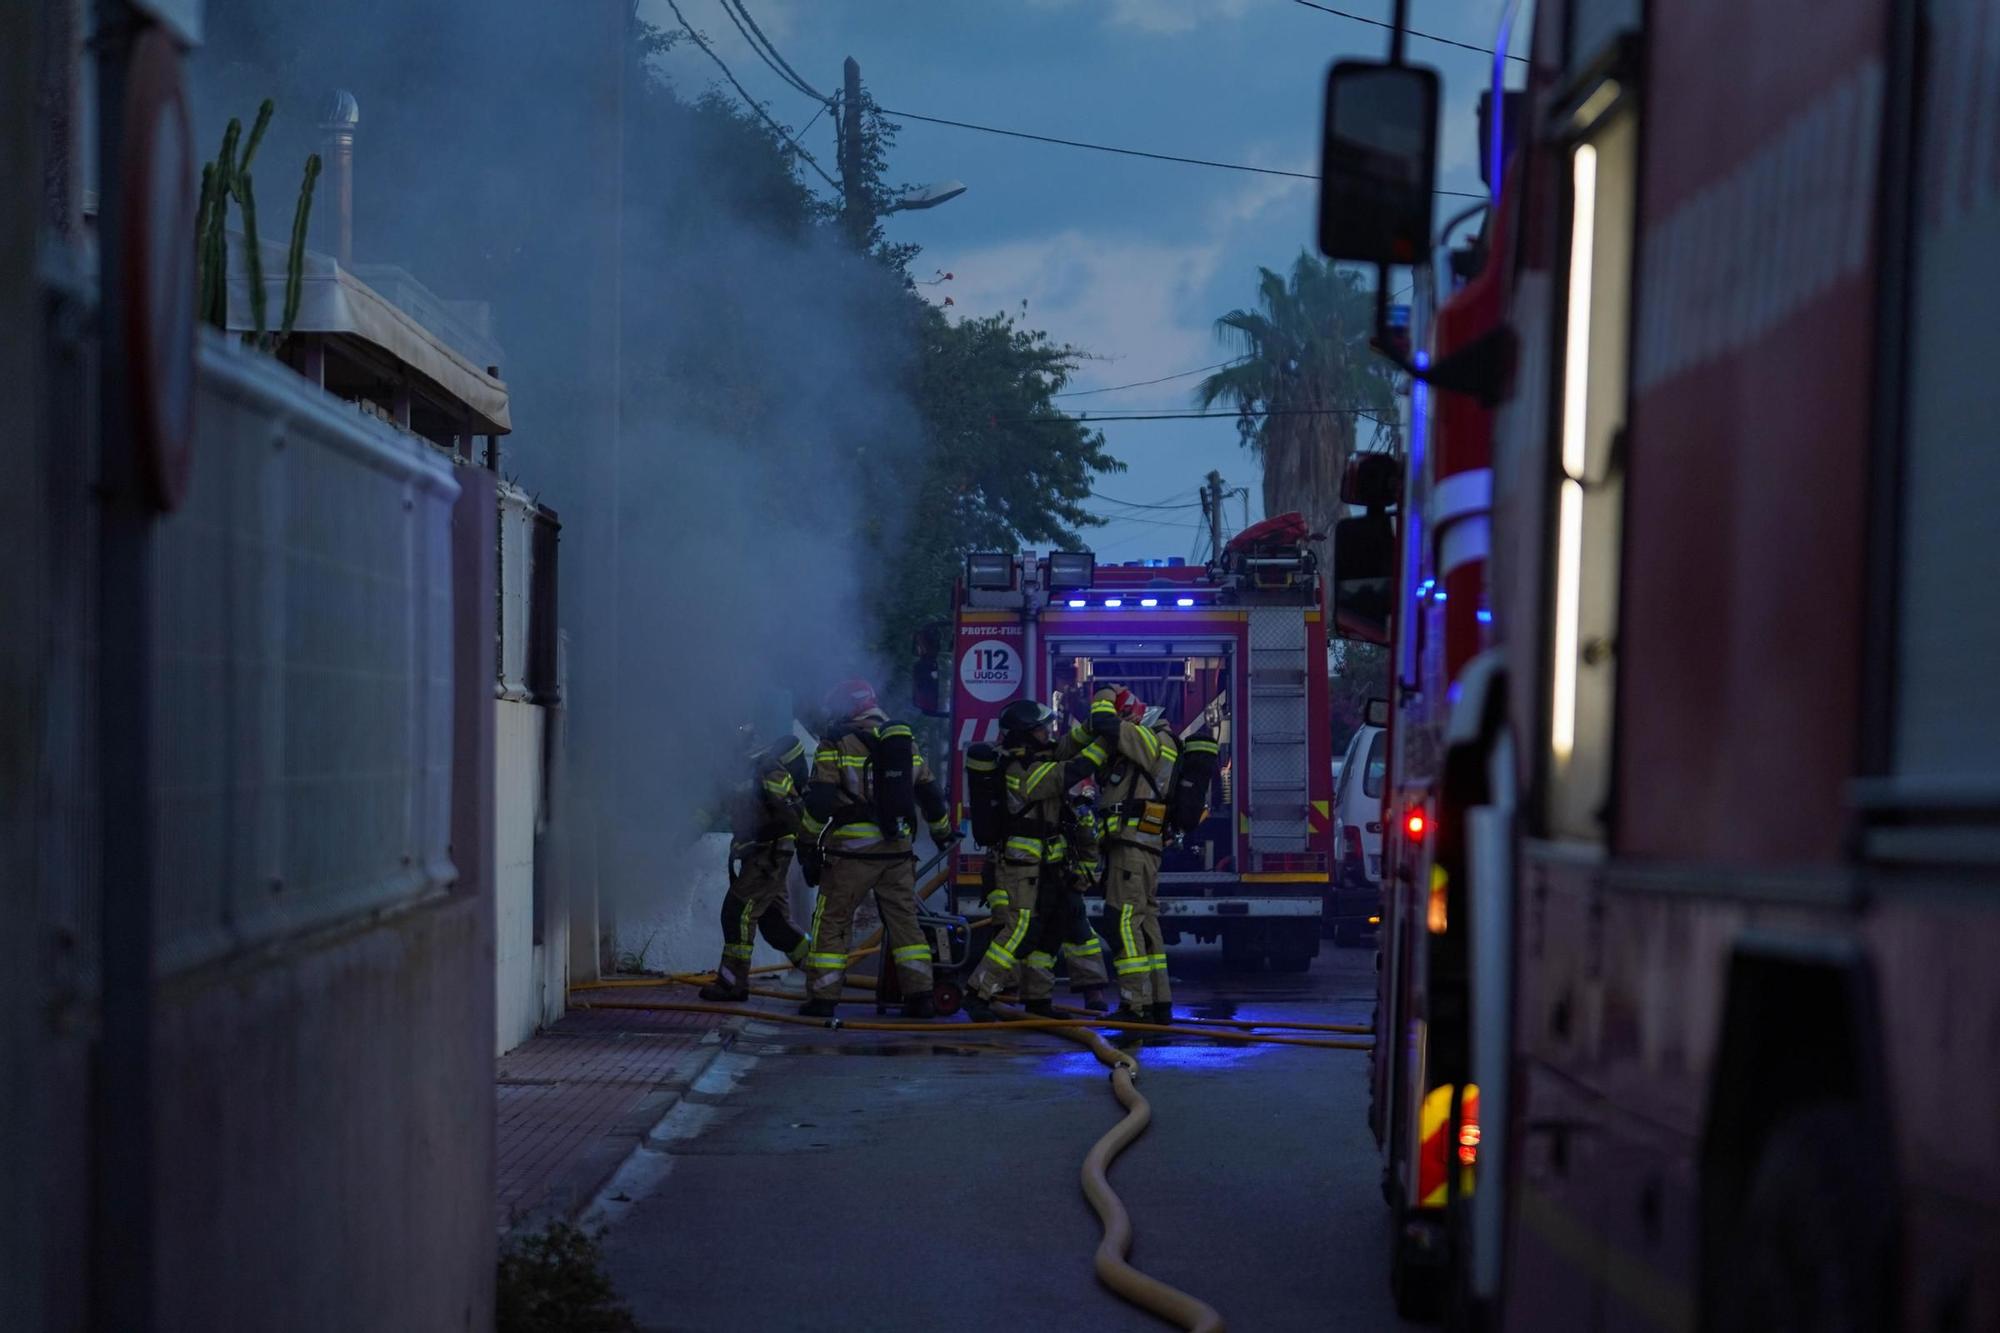 Todas las imágenes del incendio de un garaje lleno de motos en Puis d'en Valls